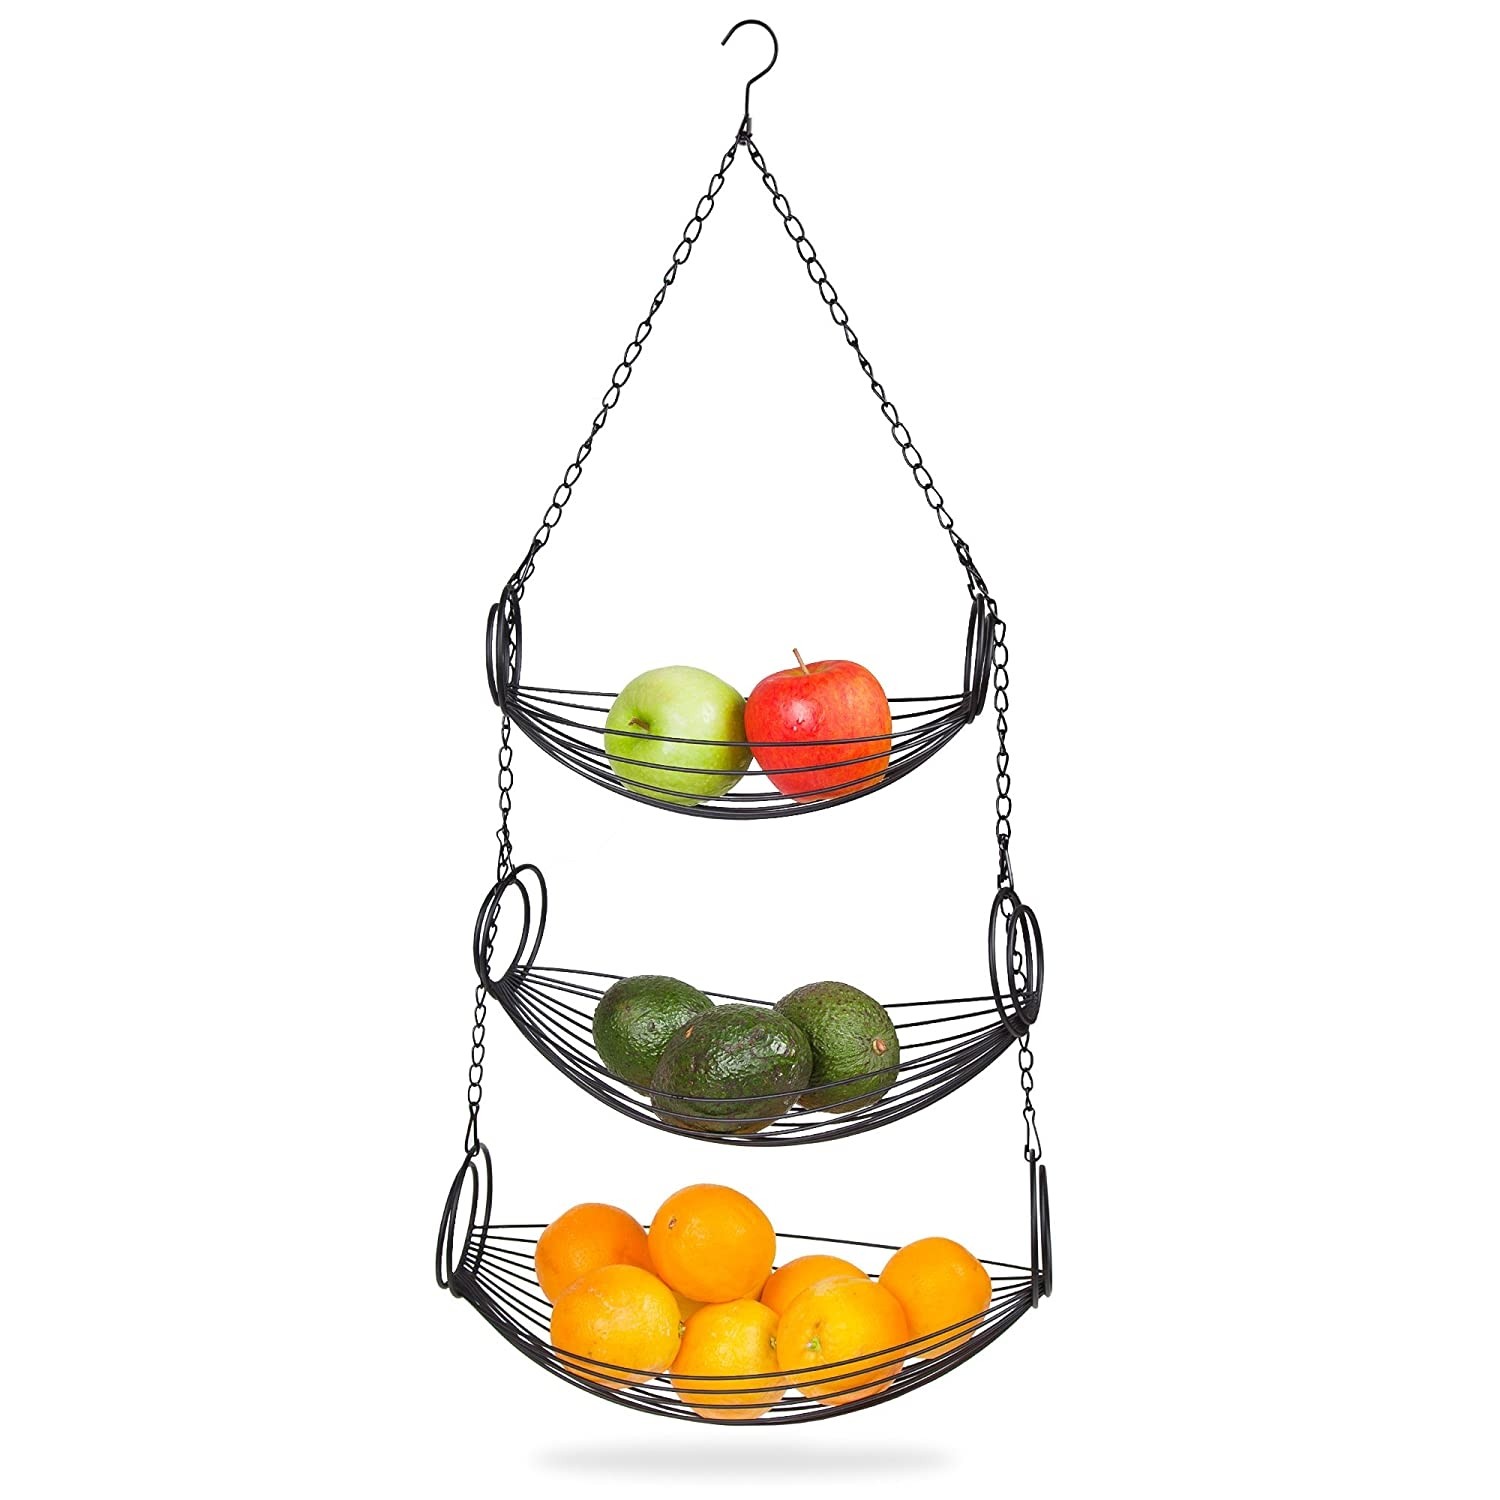 Home kitchen organizer hanging basket storage mesh fruit